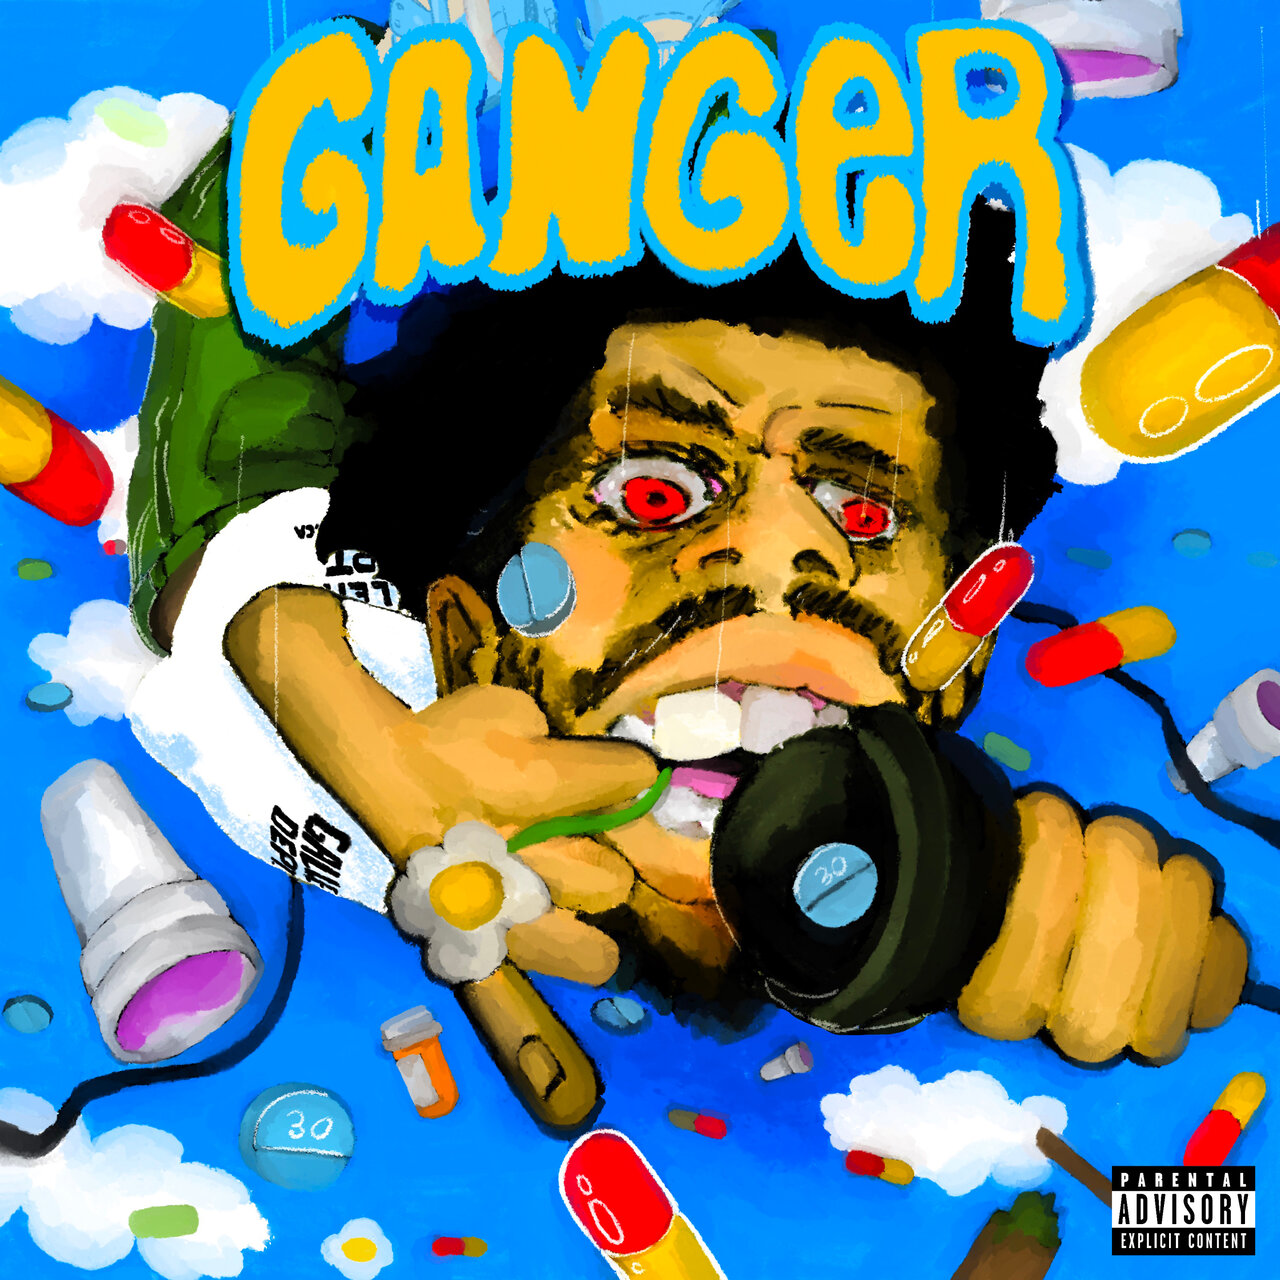 Veeze - Ganger (Cover)